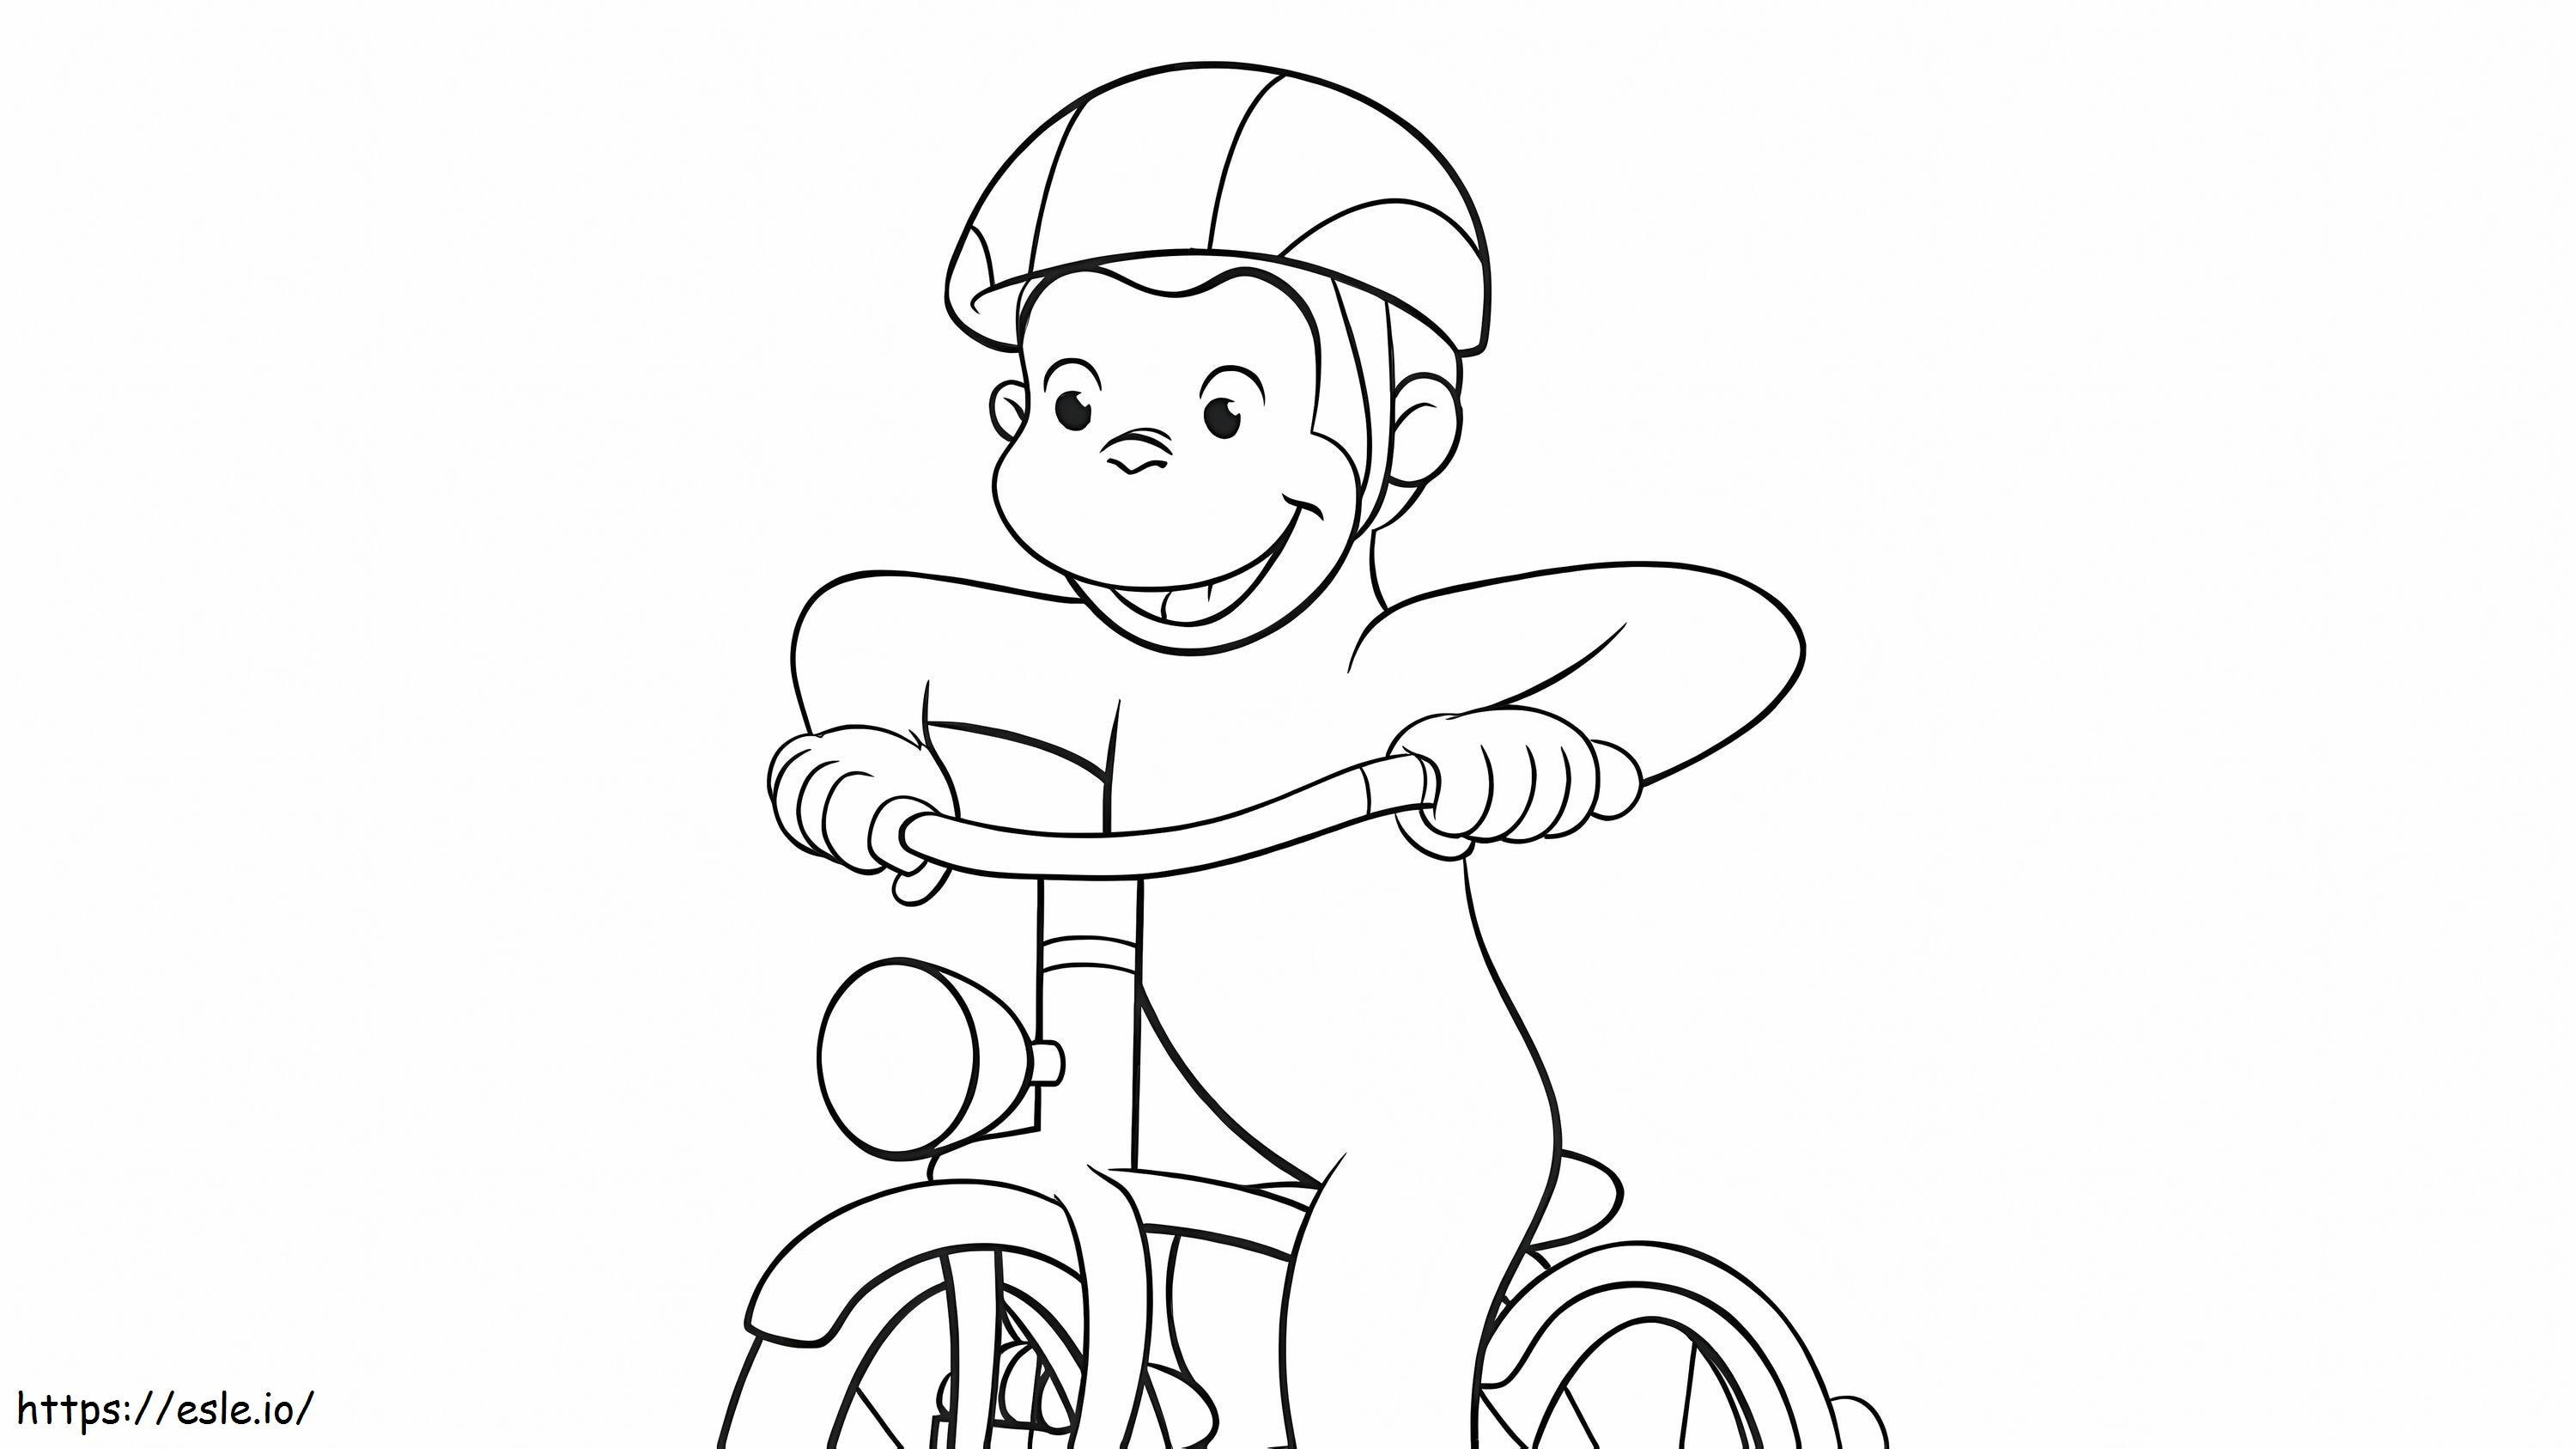 Mono montando bicicleta para colorear